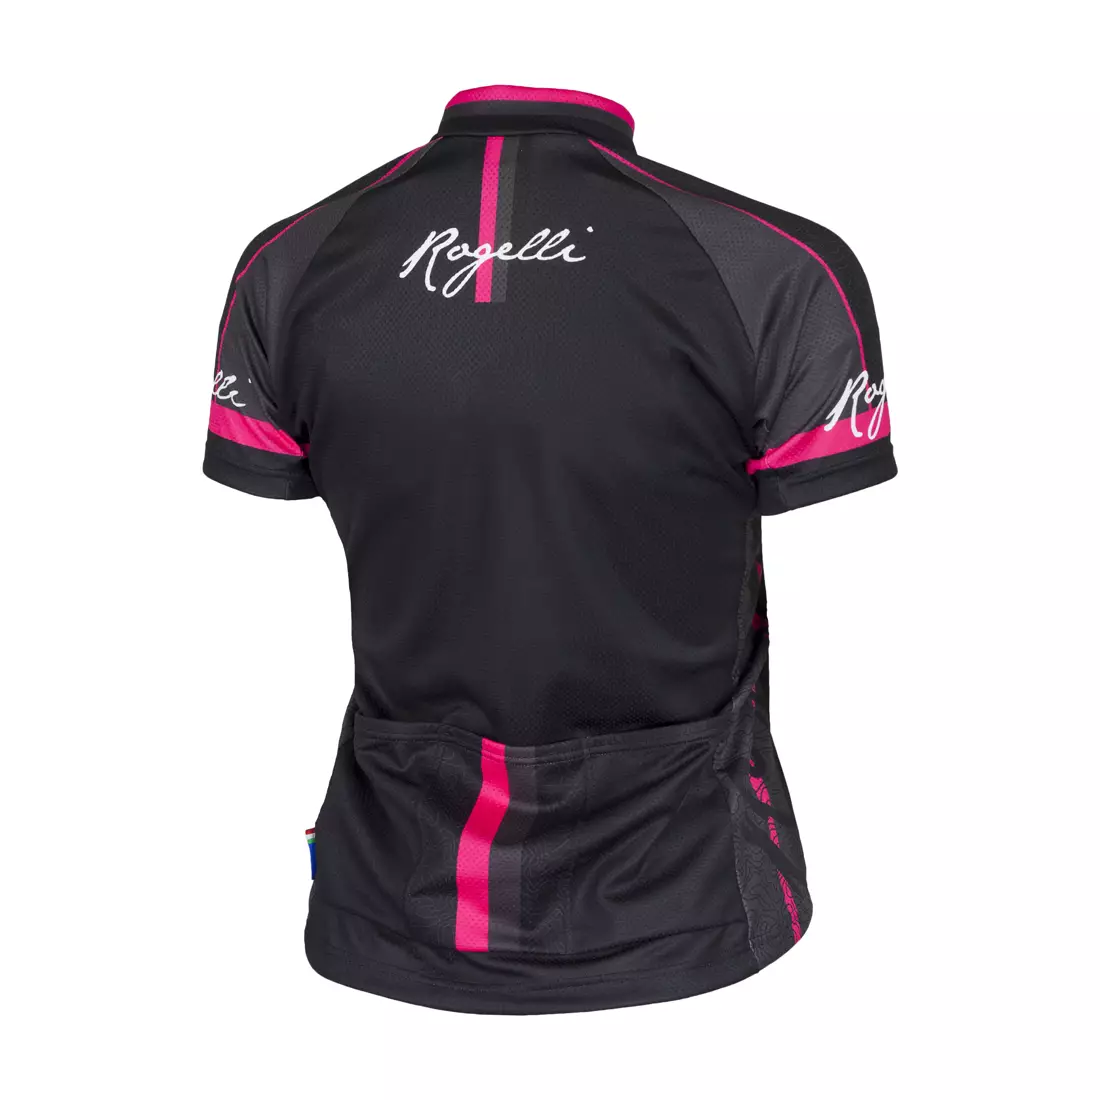 ROGELLI MANICA ROSA 010.136 dámsky cyklistický dres, čierno-ružový